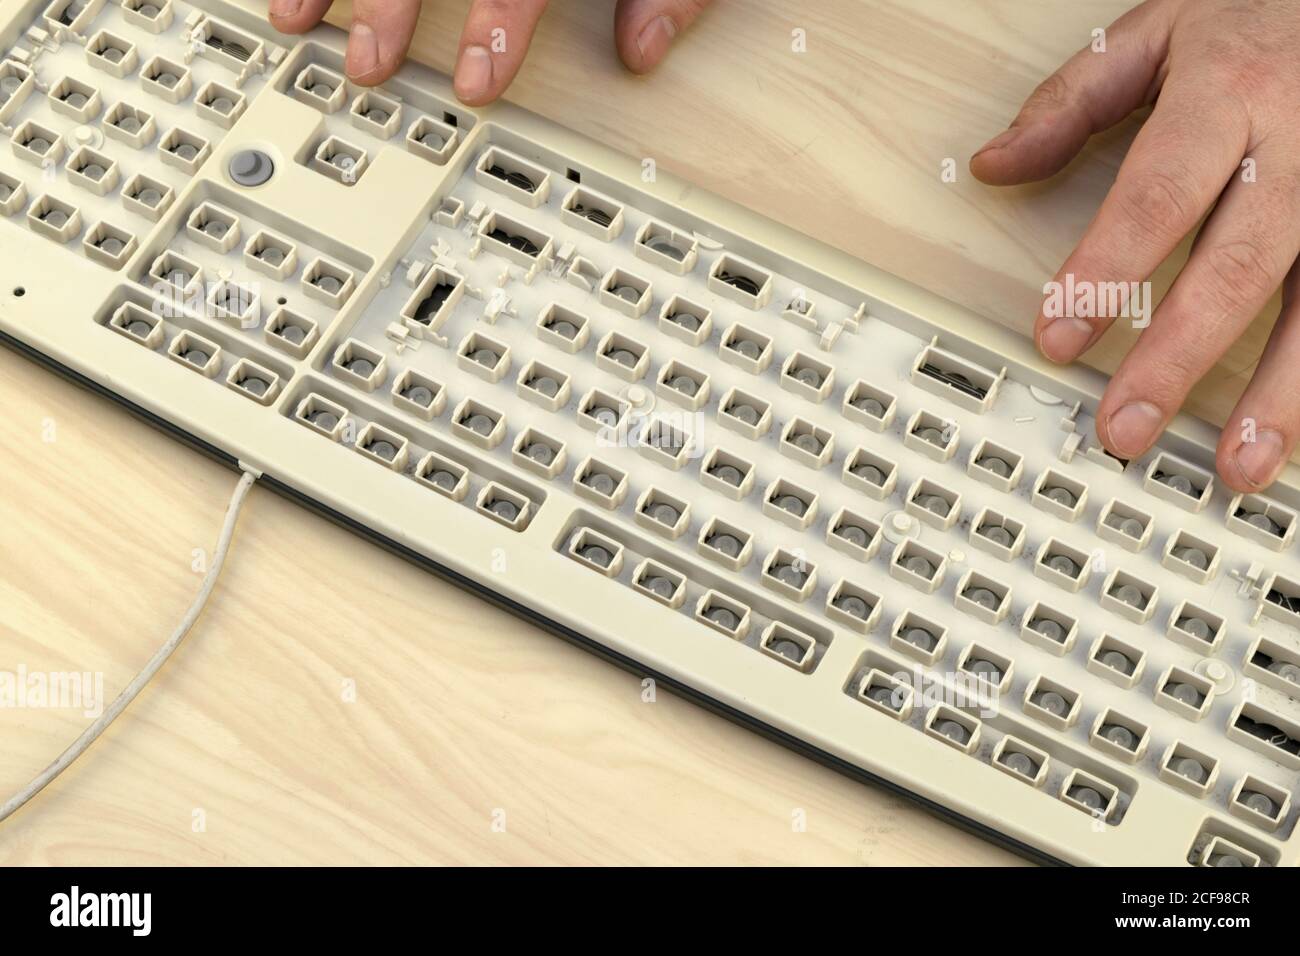 Libertad de expresión, censura y restricciones en Internet, un hombre  trabaja en un teclado sin teclas Fotografía de stock - Alamy